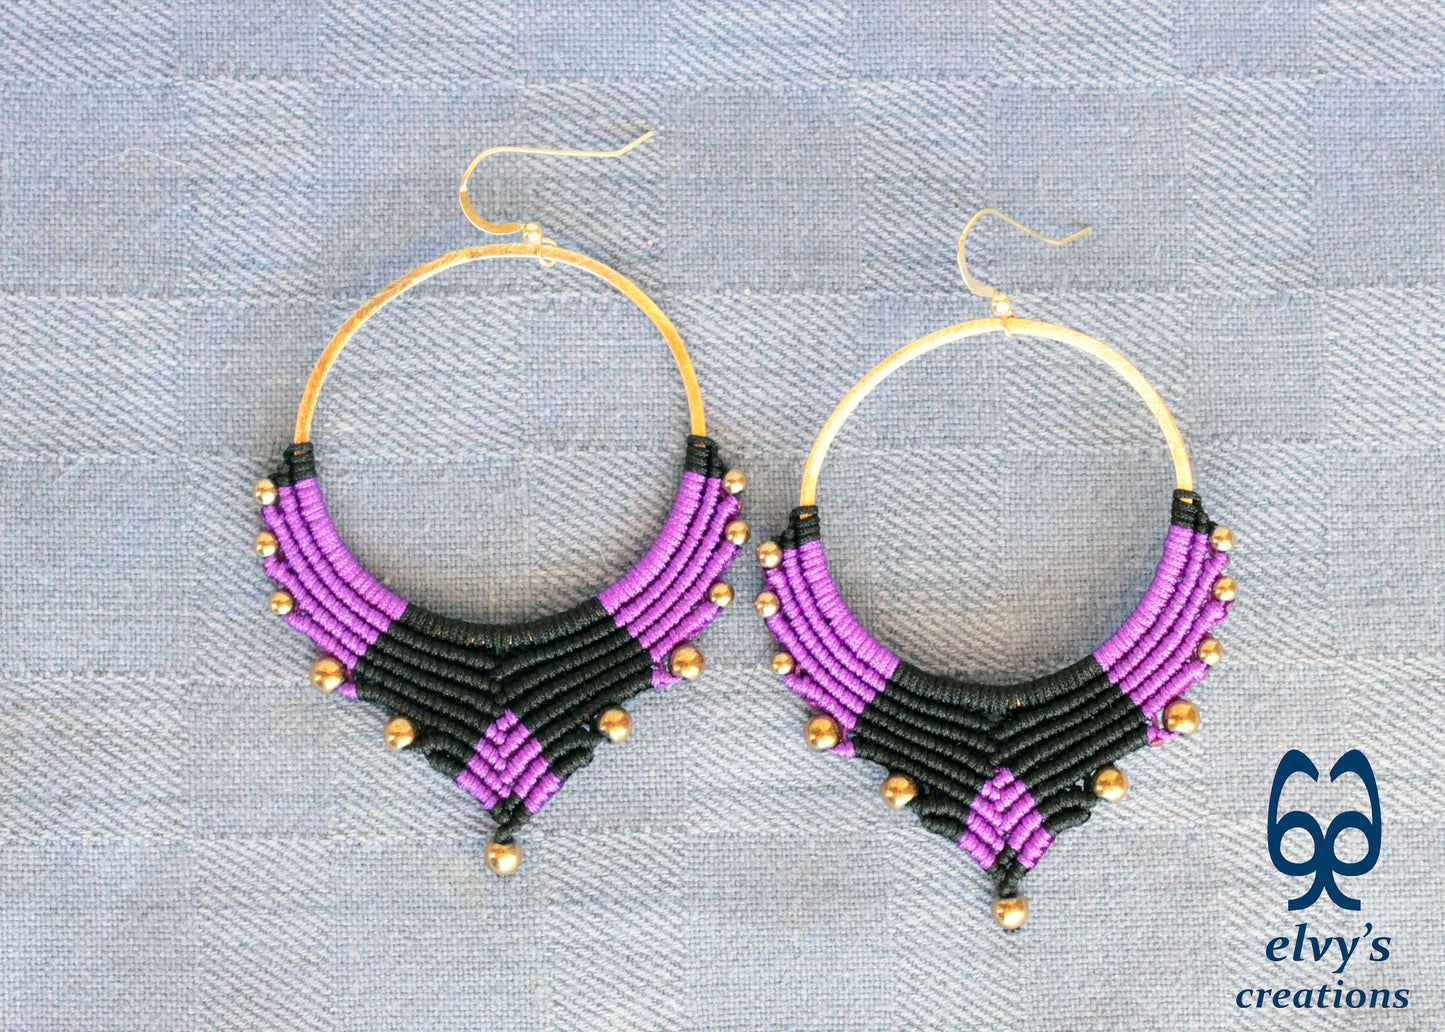 Handmade Gold Macrame Earrings, Dangle Hematite Gemstone Beads Earrings, Birthday Gift for Women